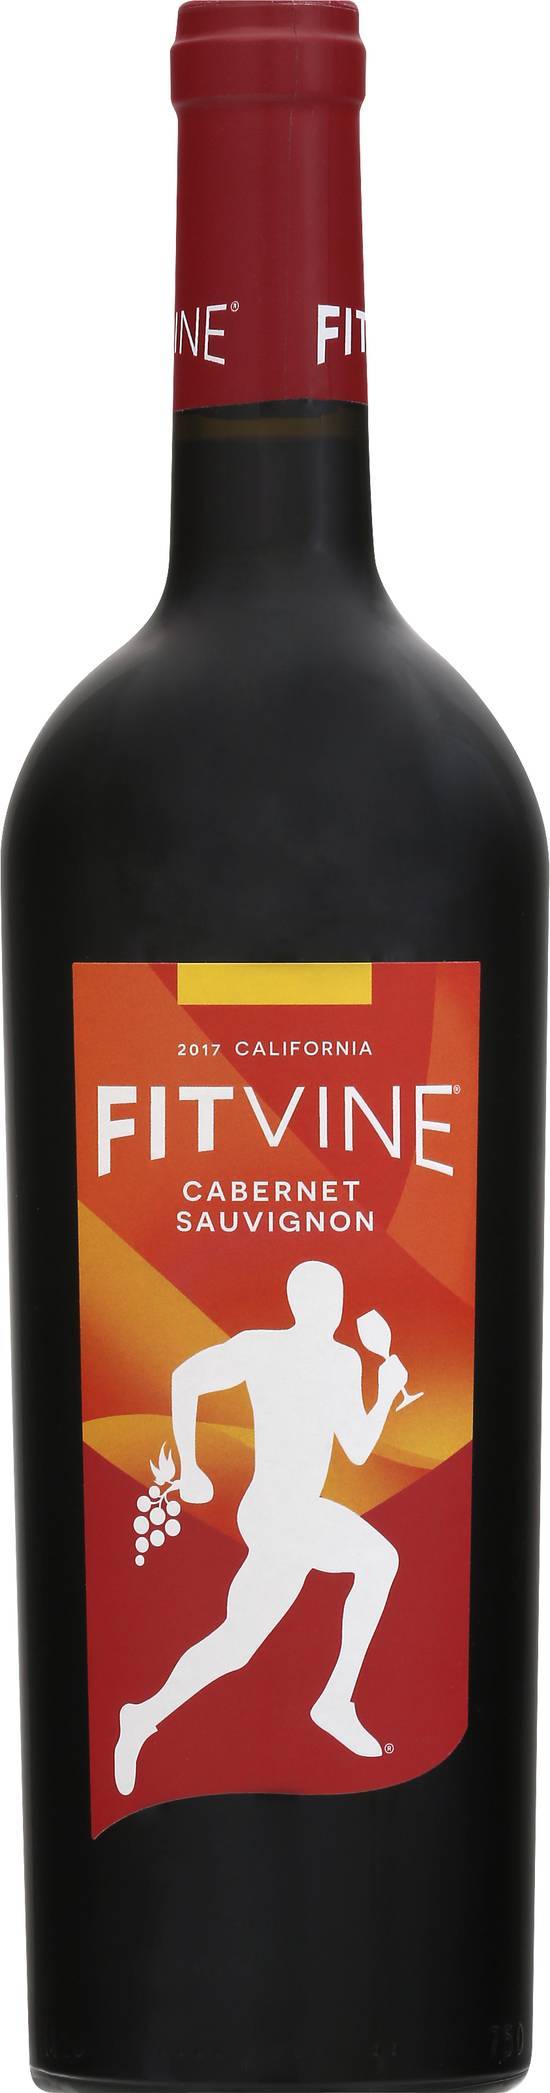 Fitvine Cabernet Sauvignon Red Wine 2017 (750 ml)